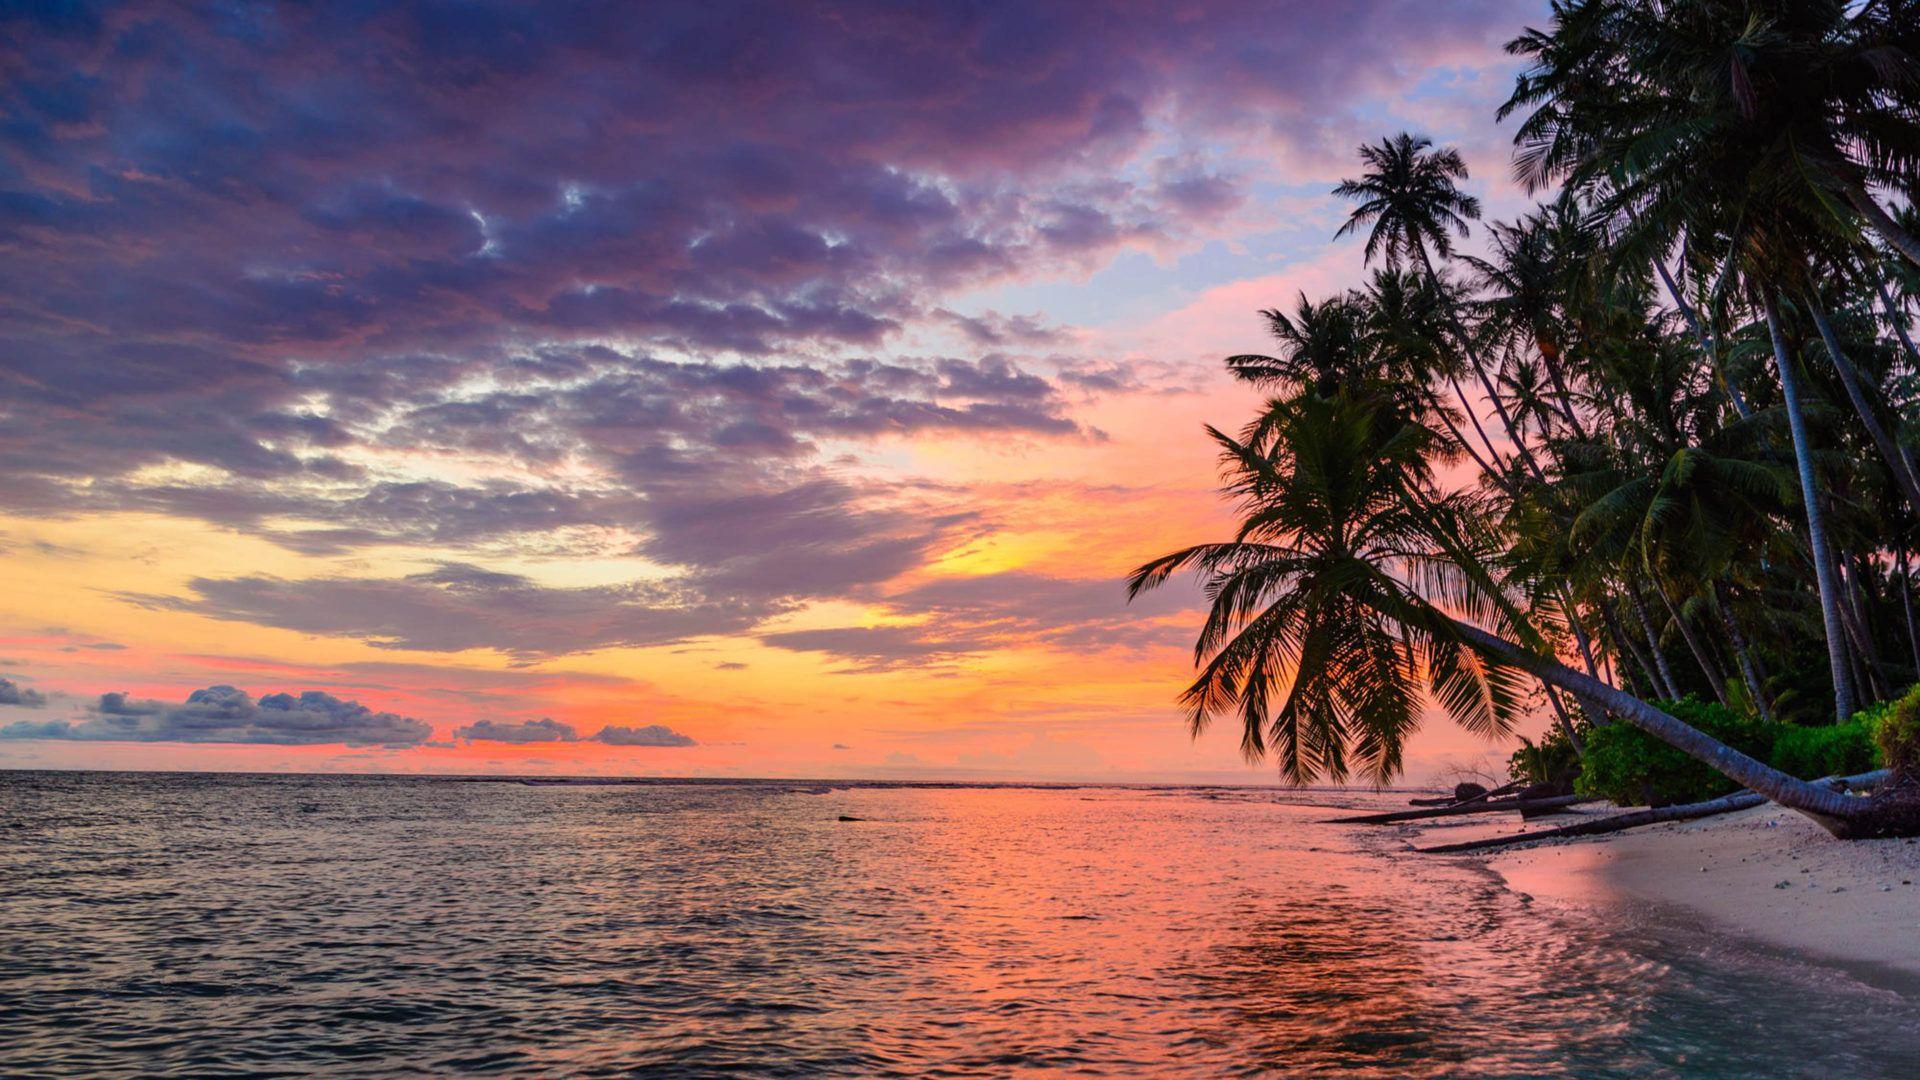 Beach Sunset HD Desktop Wallpapers - Top Free Beach Sunset HD Desktop ...